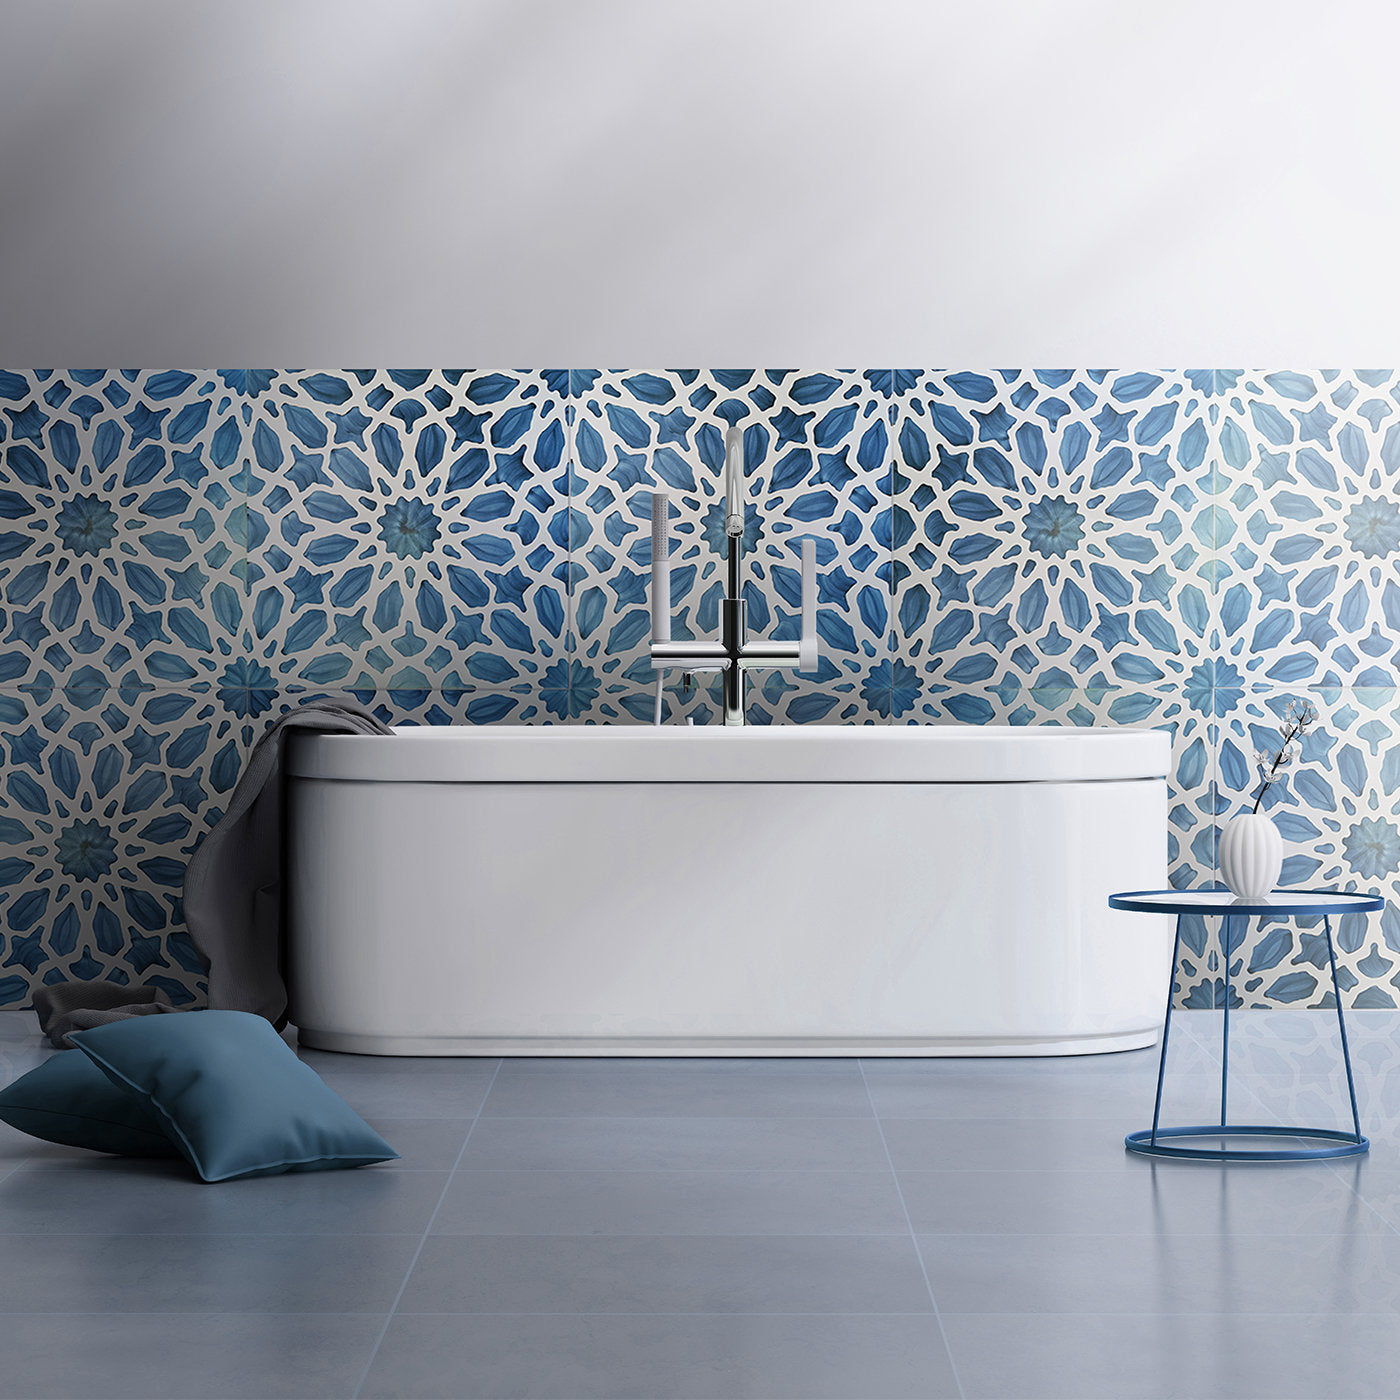 Grinda Turquoise Ceramic Tile - Alternative view 1